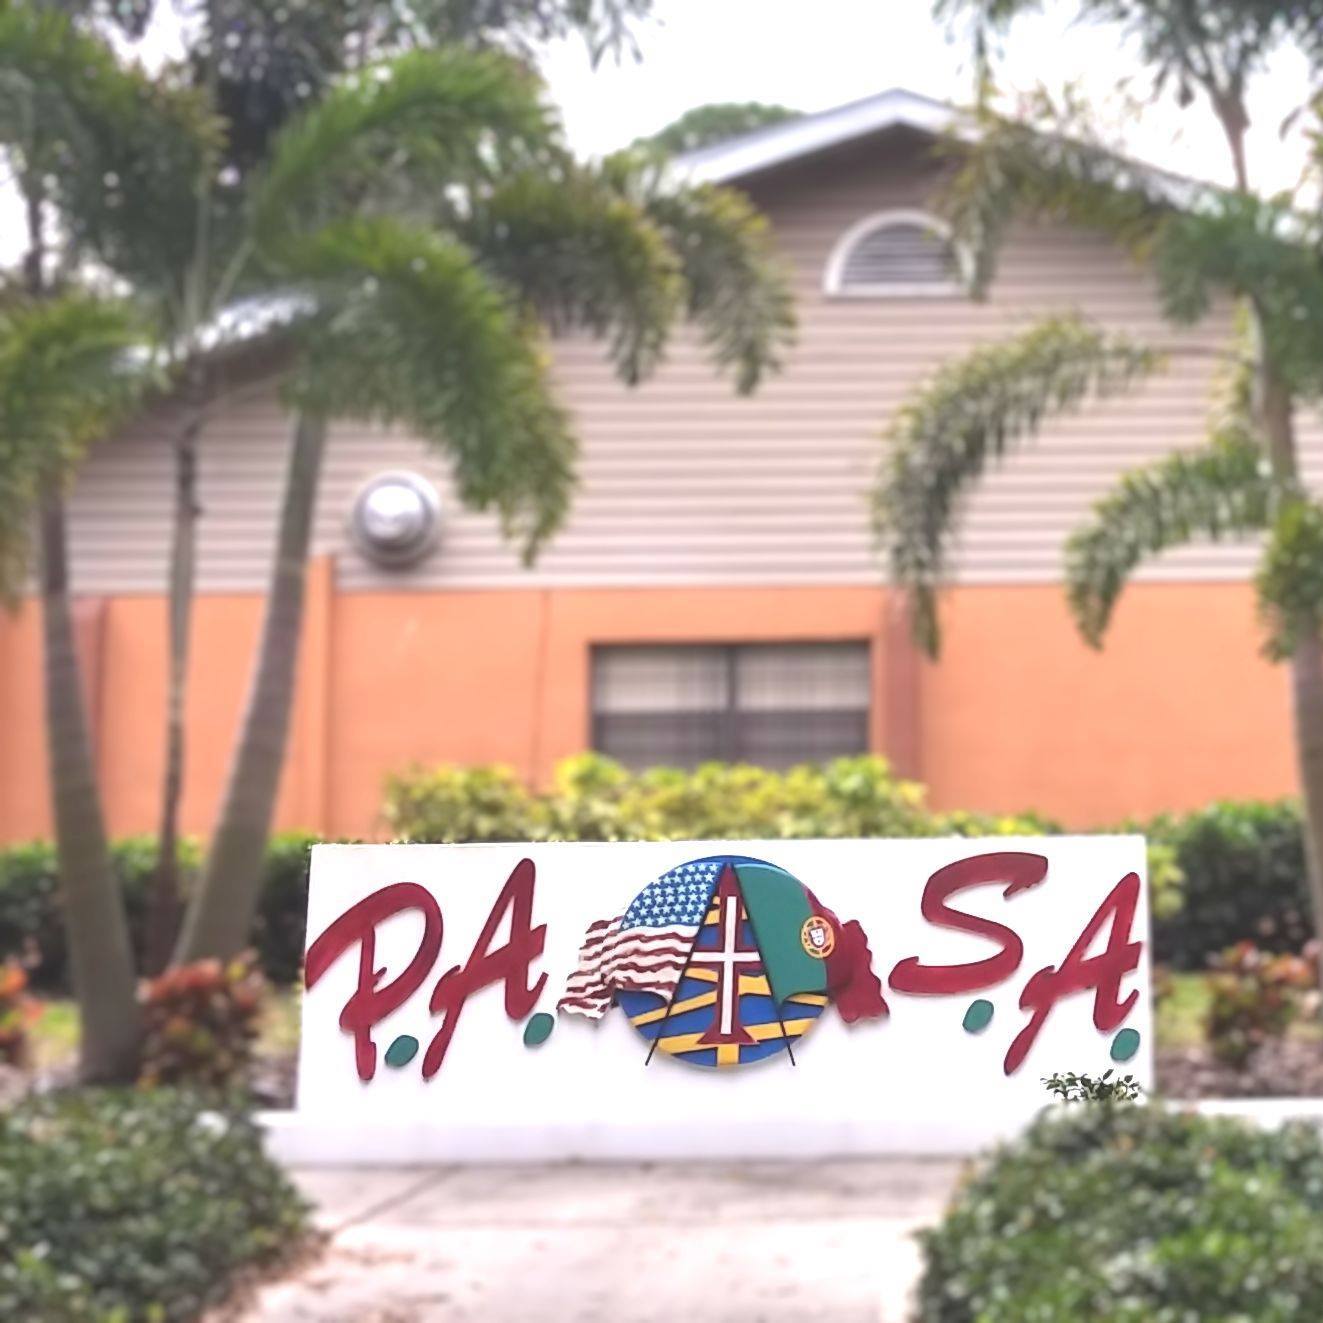 Portuguese Organization in Miami Florida - Portuguese American Suncoast Association